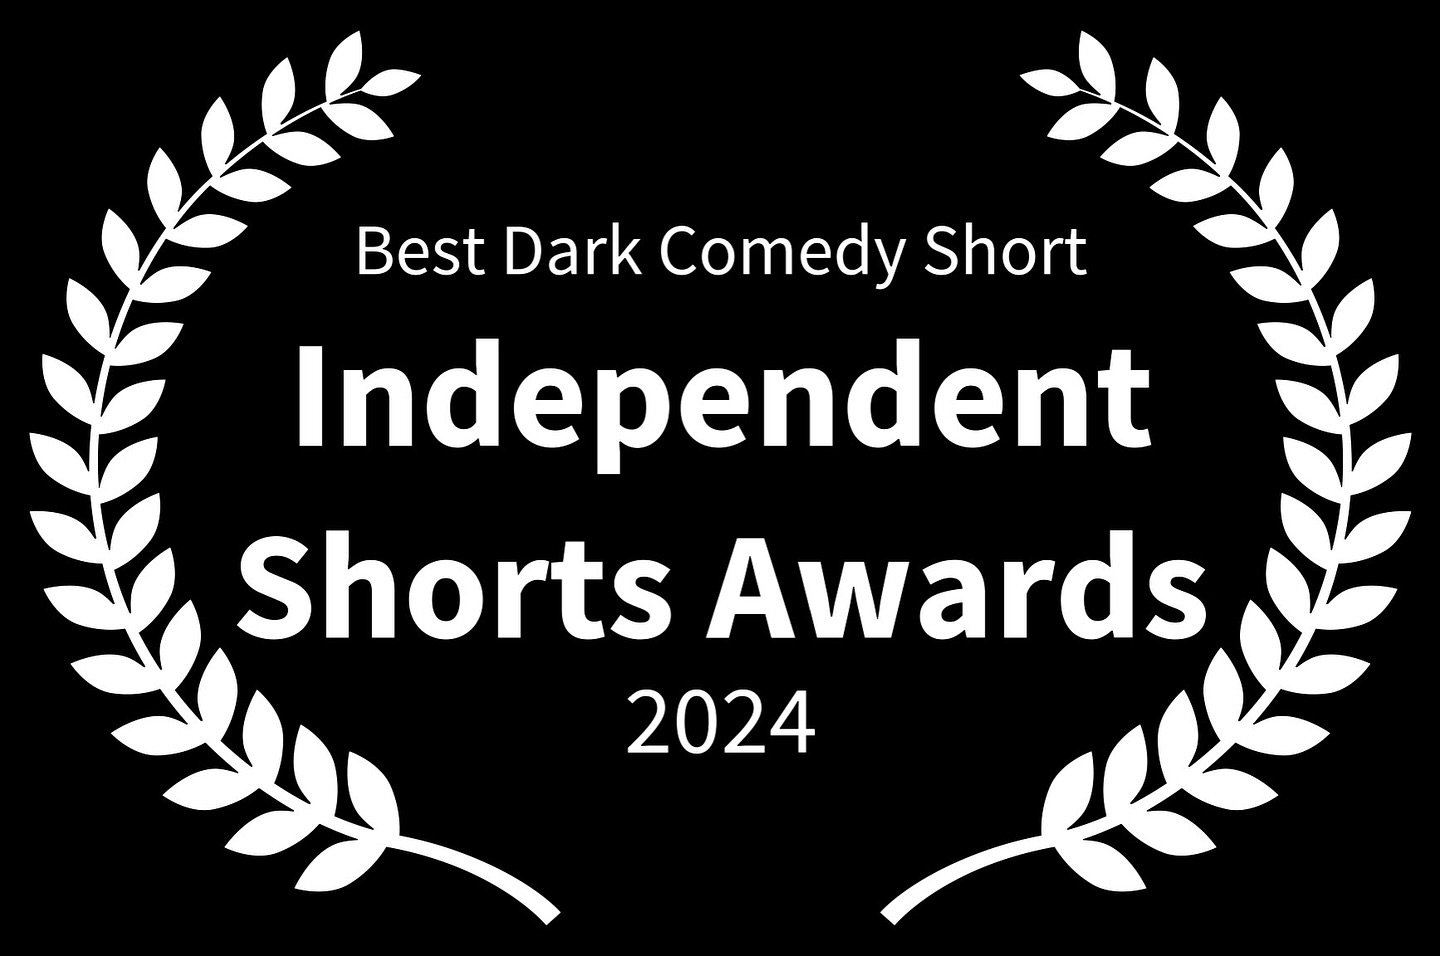 Winner winner chicken dinner! Thank you @independentshortsawards ❤️

#filmfestival #independentfilm #shortfilm #winner #bestfilm #darkcomedy #horrormovies #comedyhorror #shortfilmfestival #russian #filmmaking